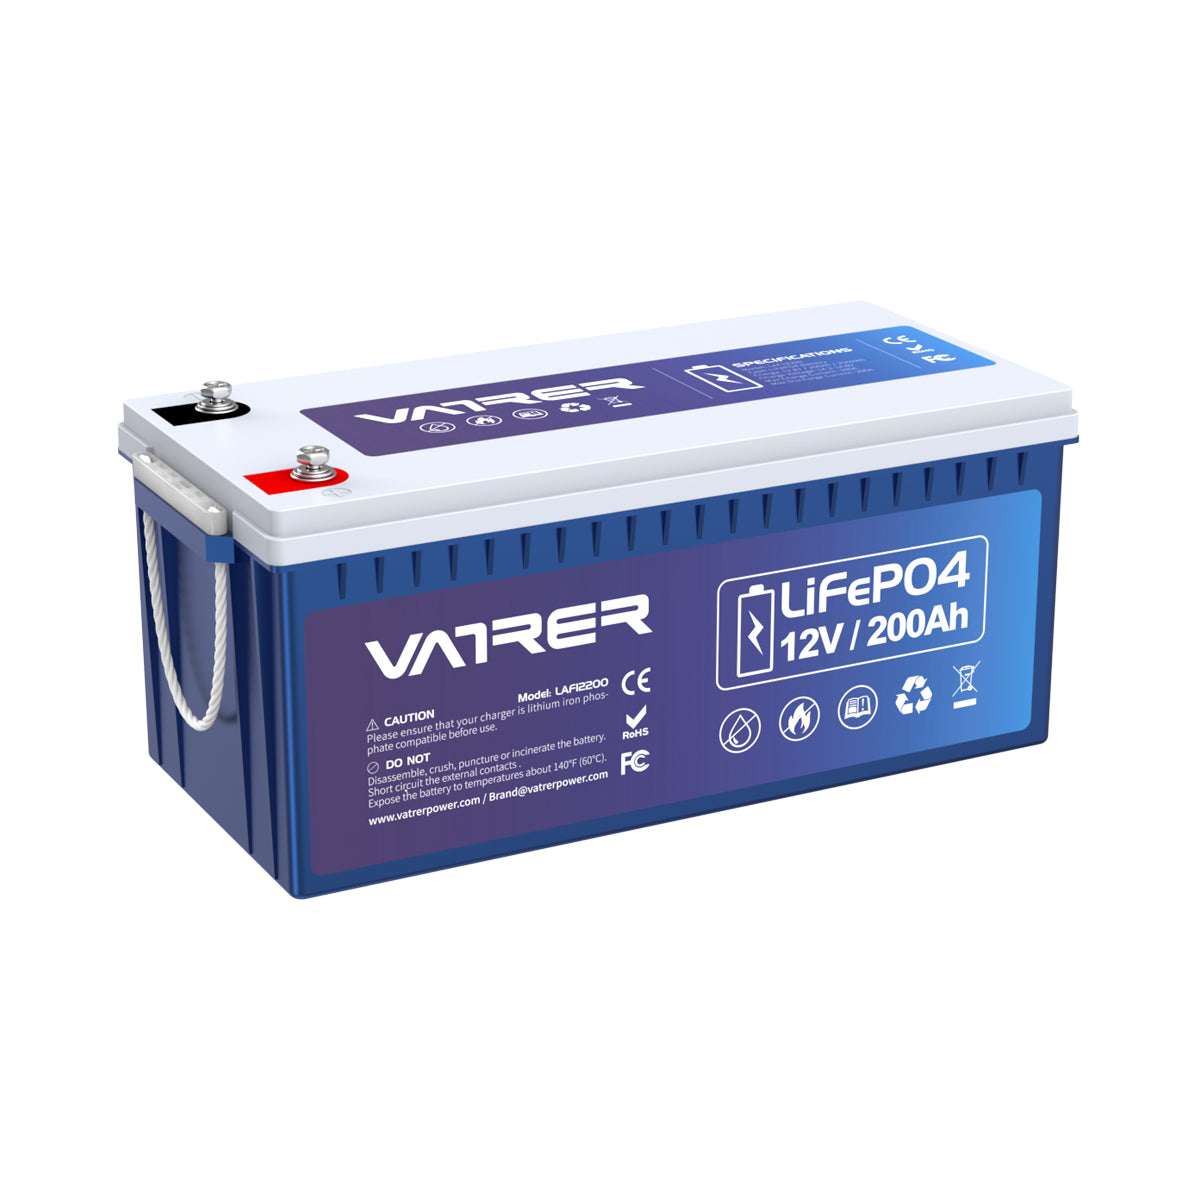 <tc>Vatrer</tc> 12 V 200 Ah Plus-Lithiumbatterie, integriertes 200 A BMS und LiFePO4-Batterien mit Niedertemperaturabschaltung 9